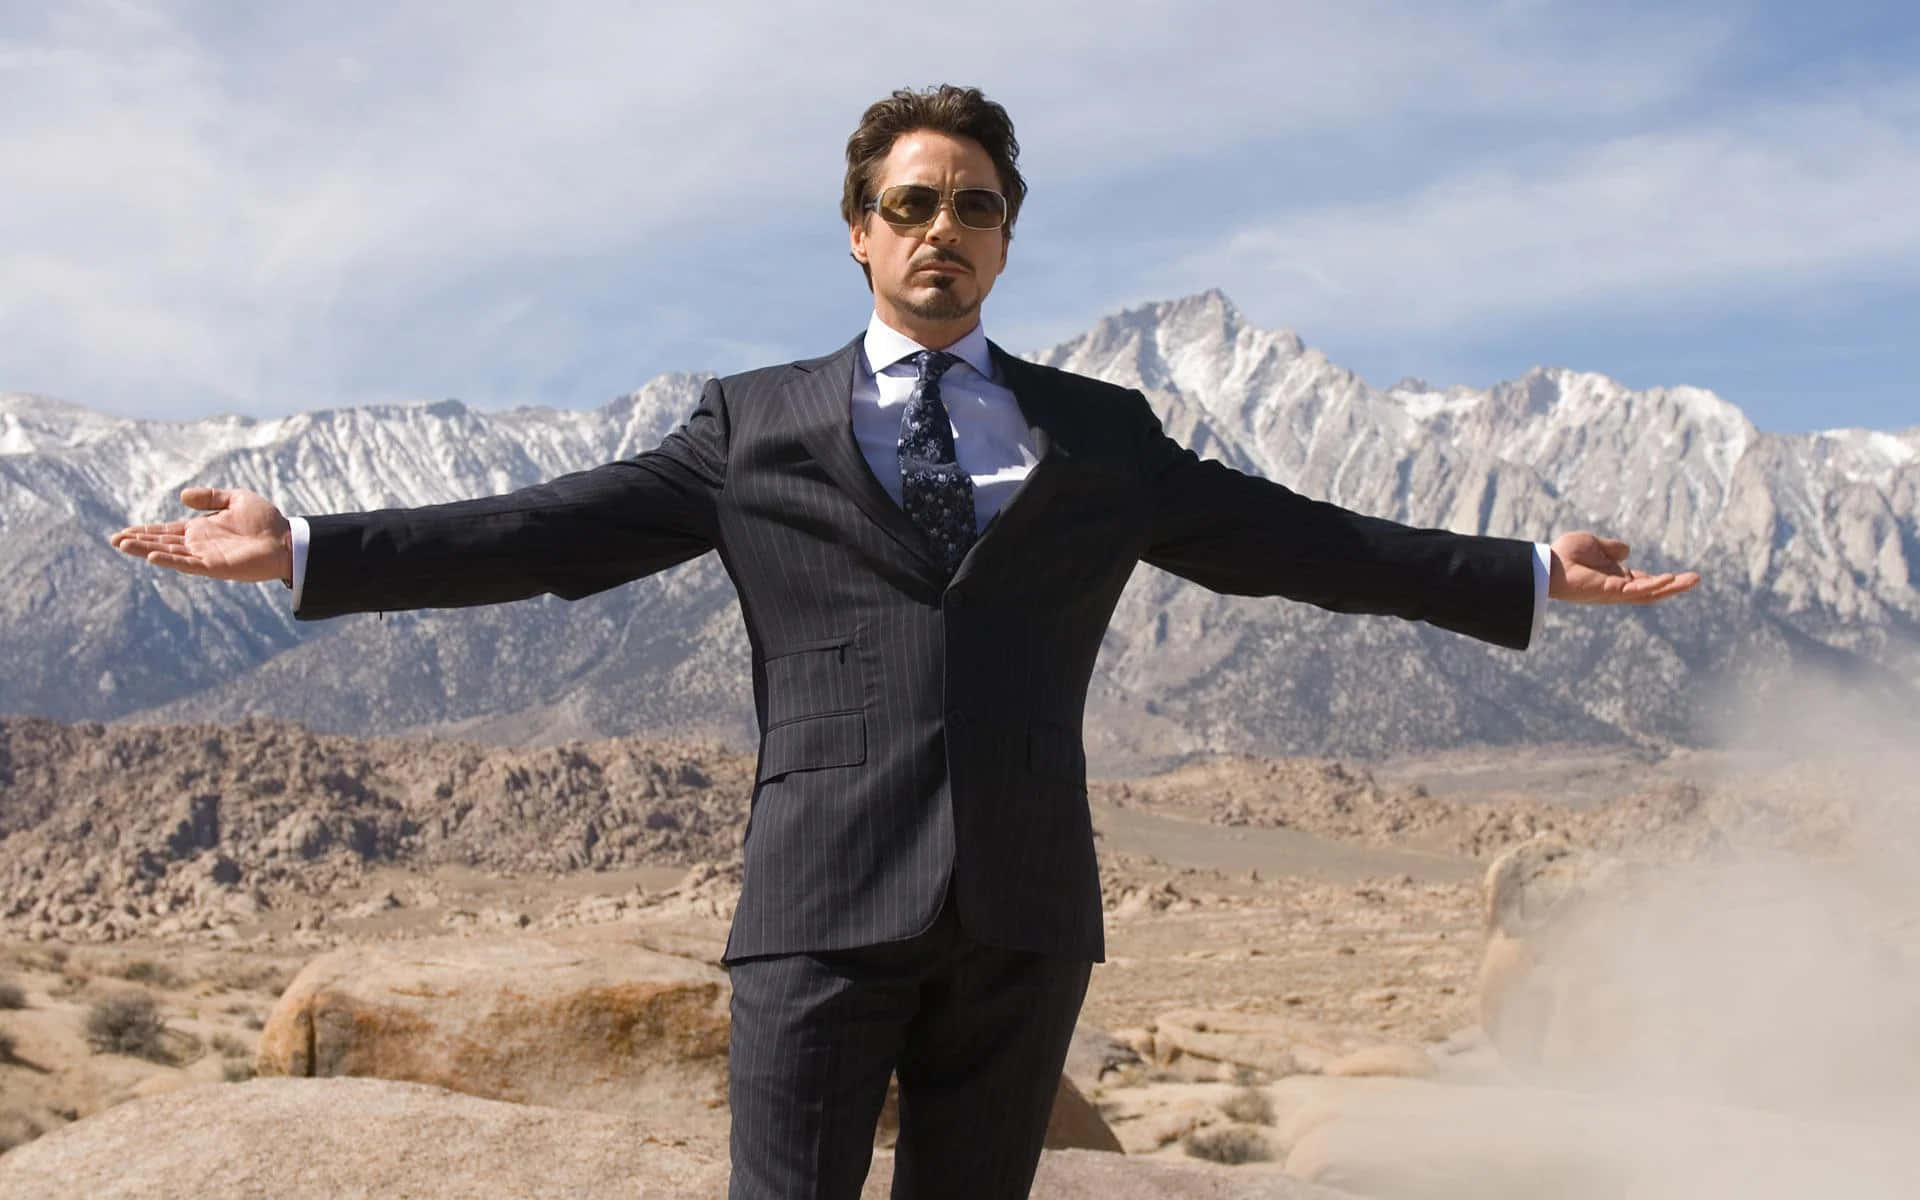 Tony Stark Desert Pose Wallpaper